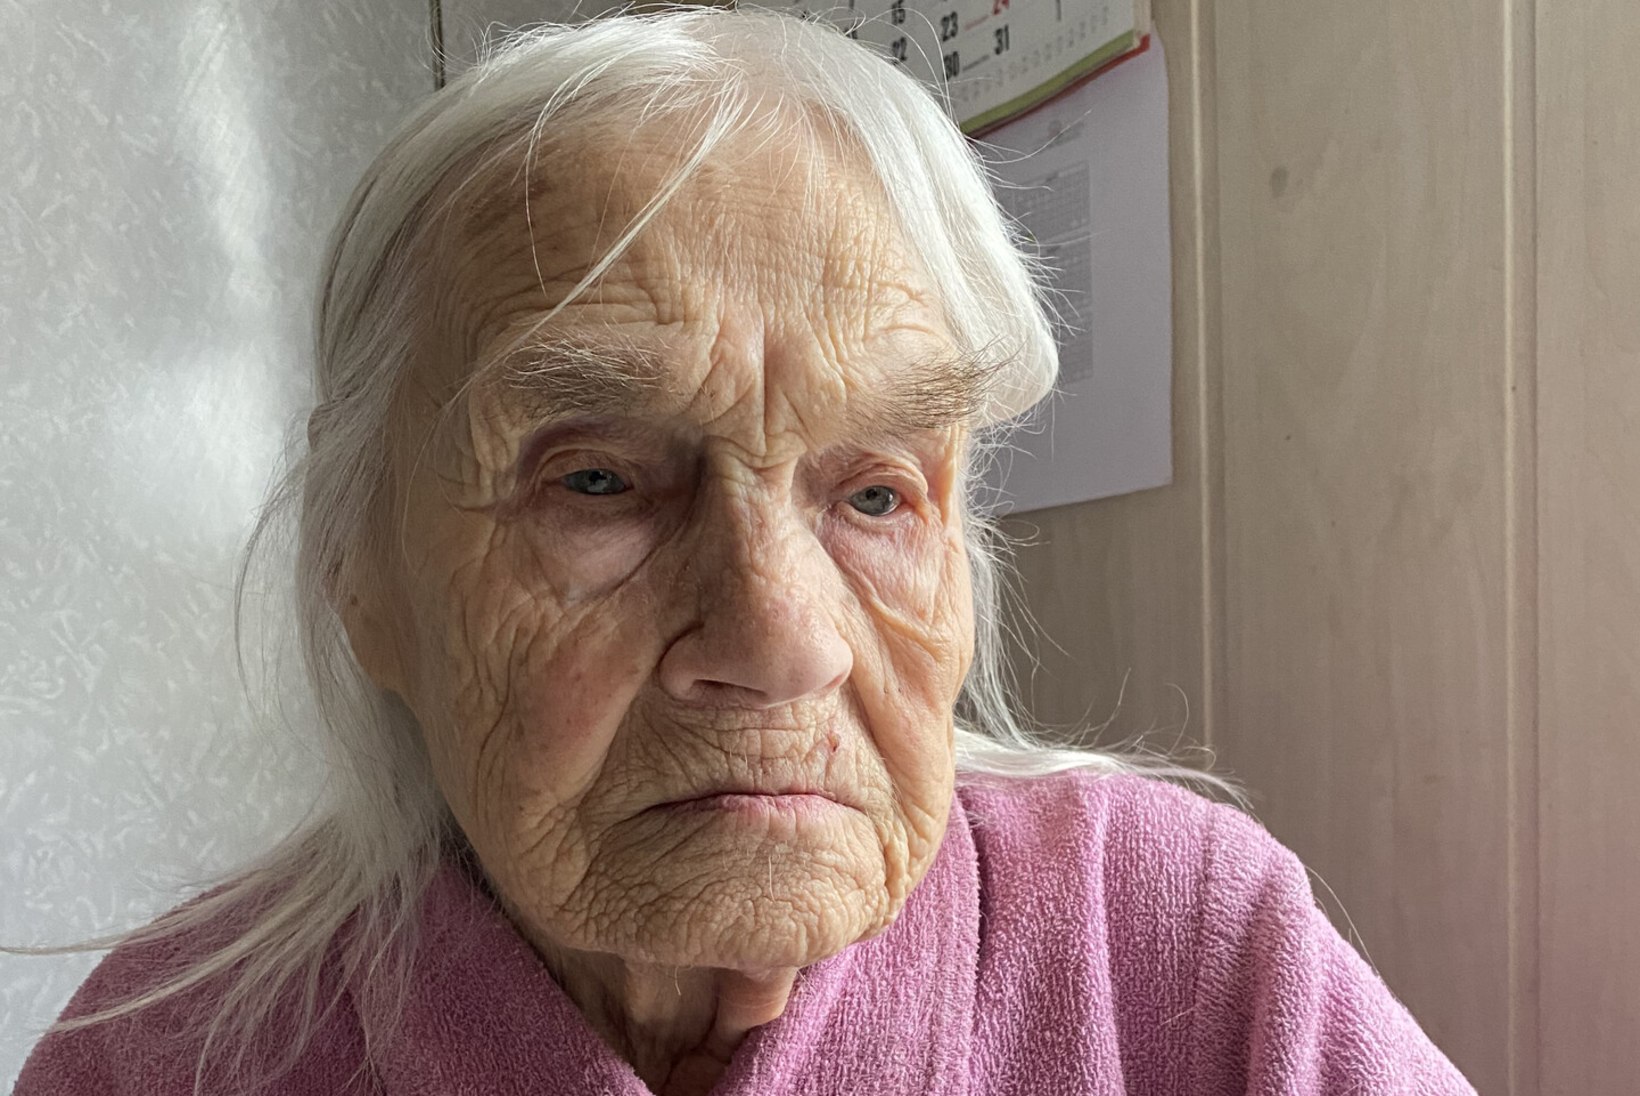 PALJU ÕNNE! Eesti vanim elanik Ottilie-Armilde Tinnuri saab täna 110aastaseks. „Mis tunne on elada nii kaua? Tüdineb ära...“